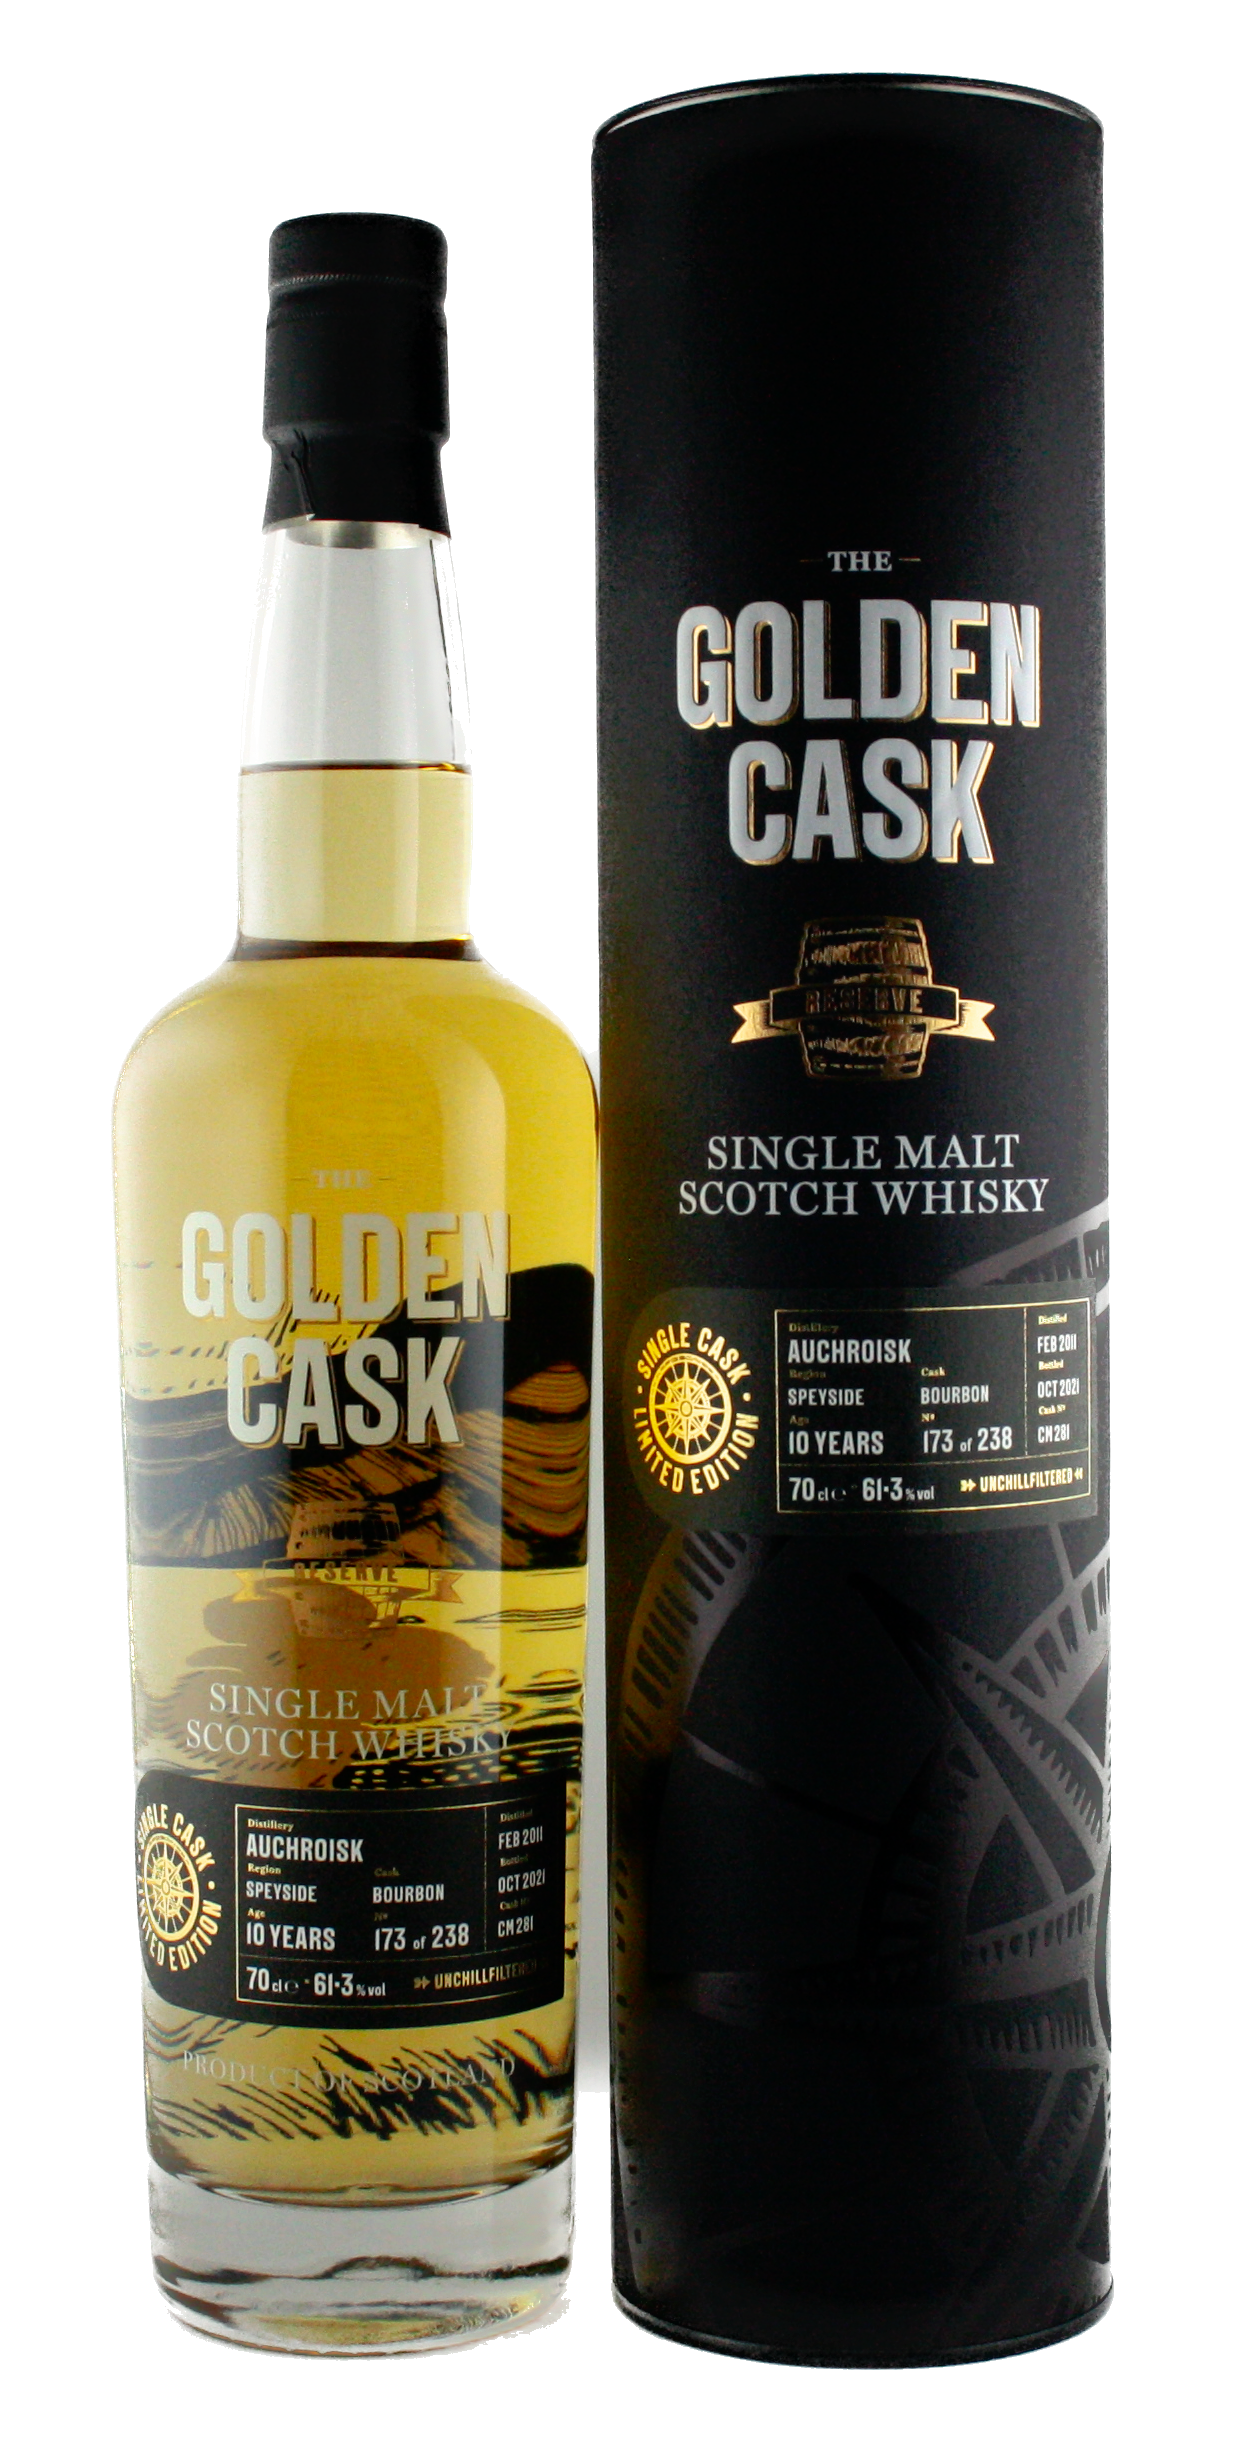 The Golden Cask Auchroisk 10 Years